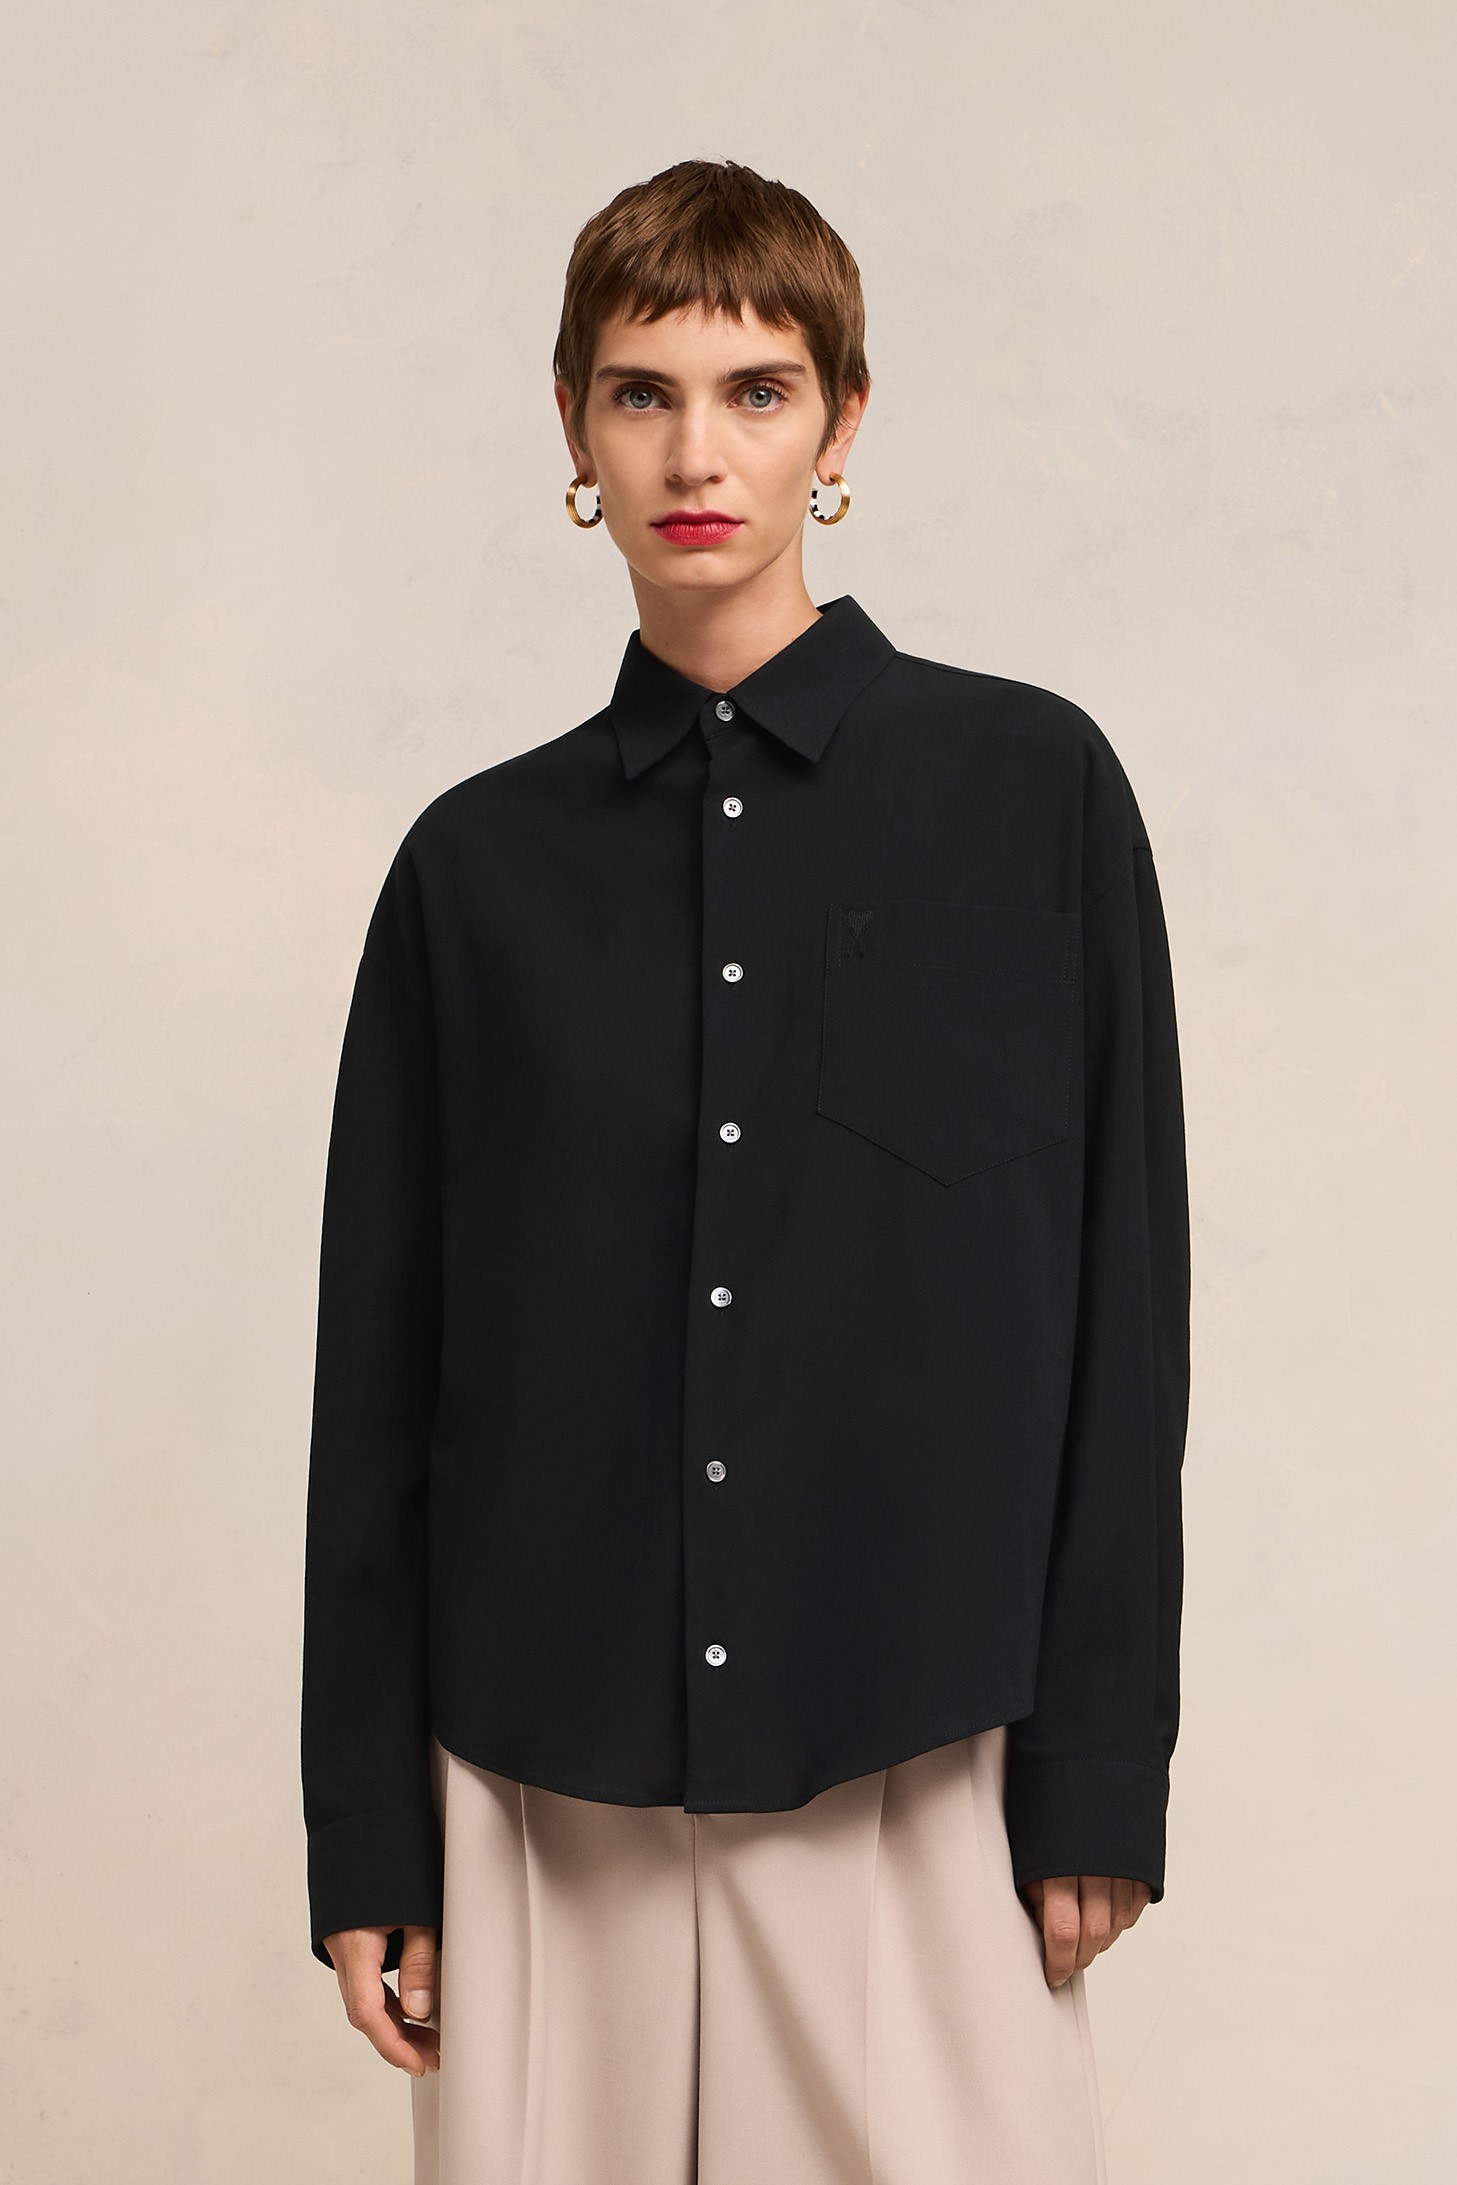 AMI PARIS De Coeur Cotton Crepe Shirt in Black L